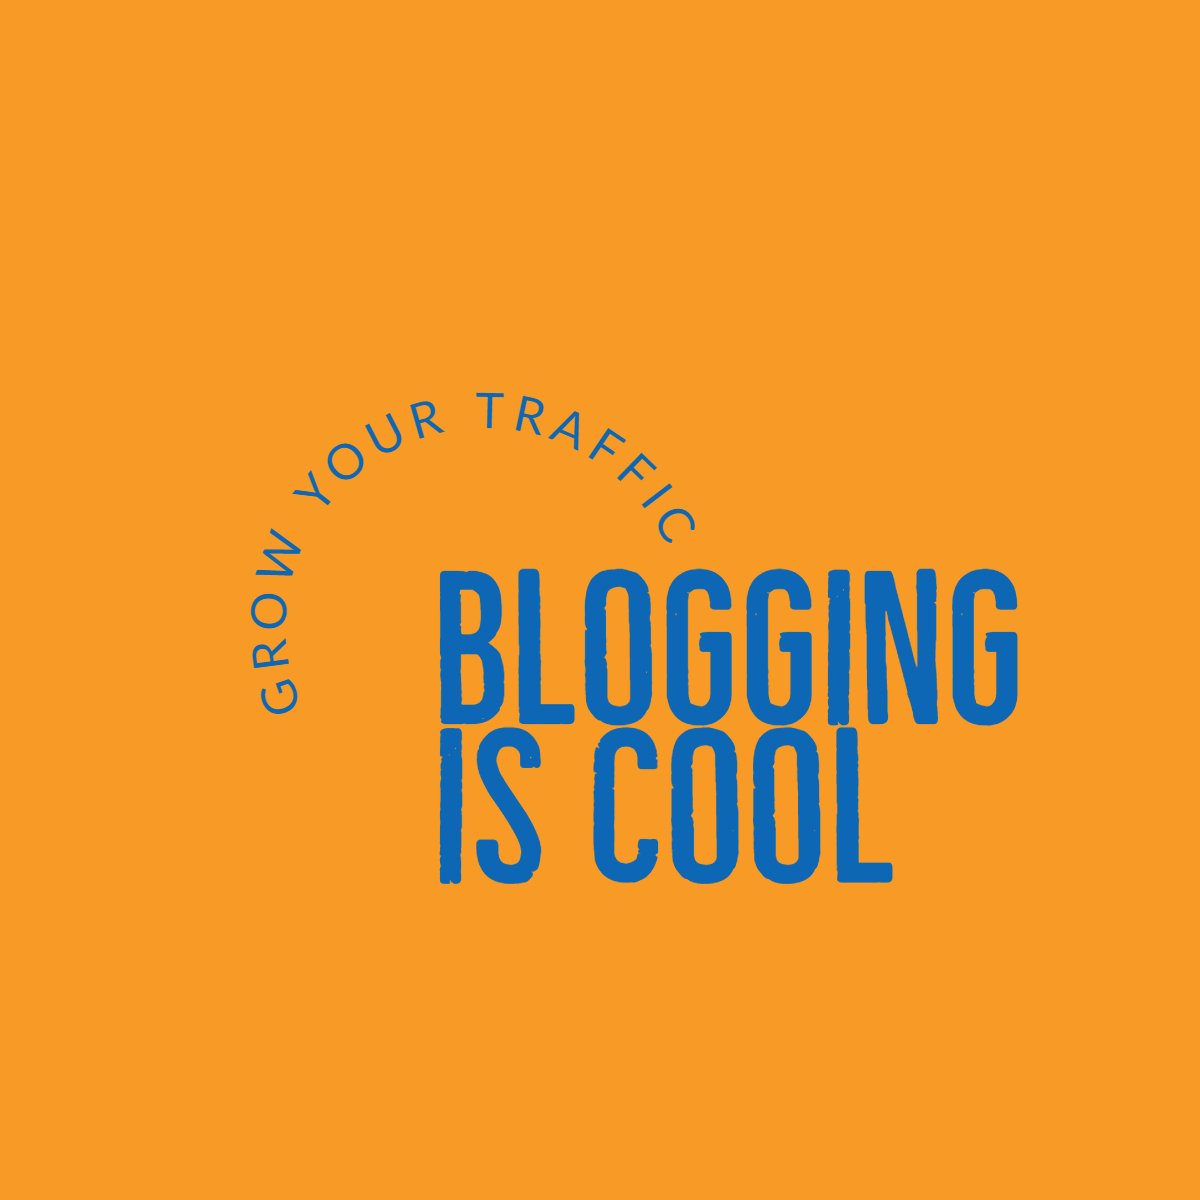 bloggingiscool.com setting up descriptions of blog posts.